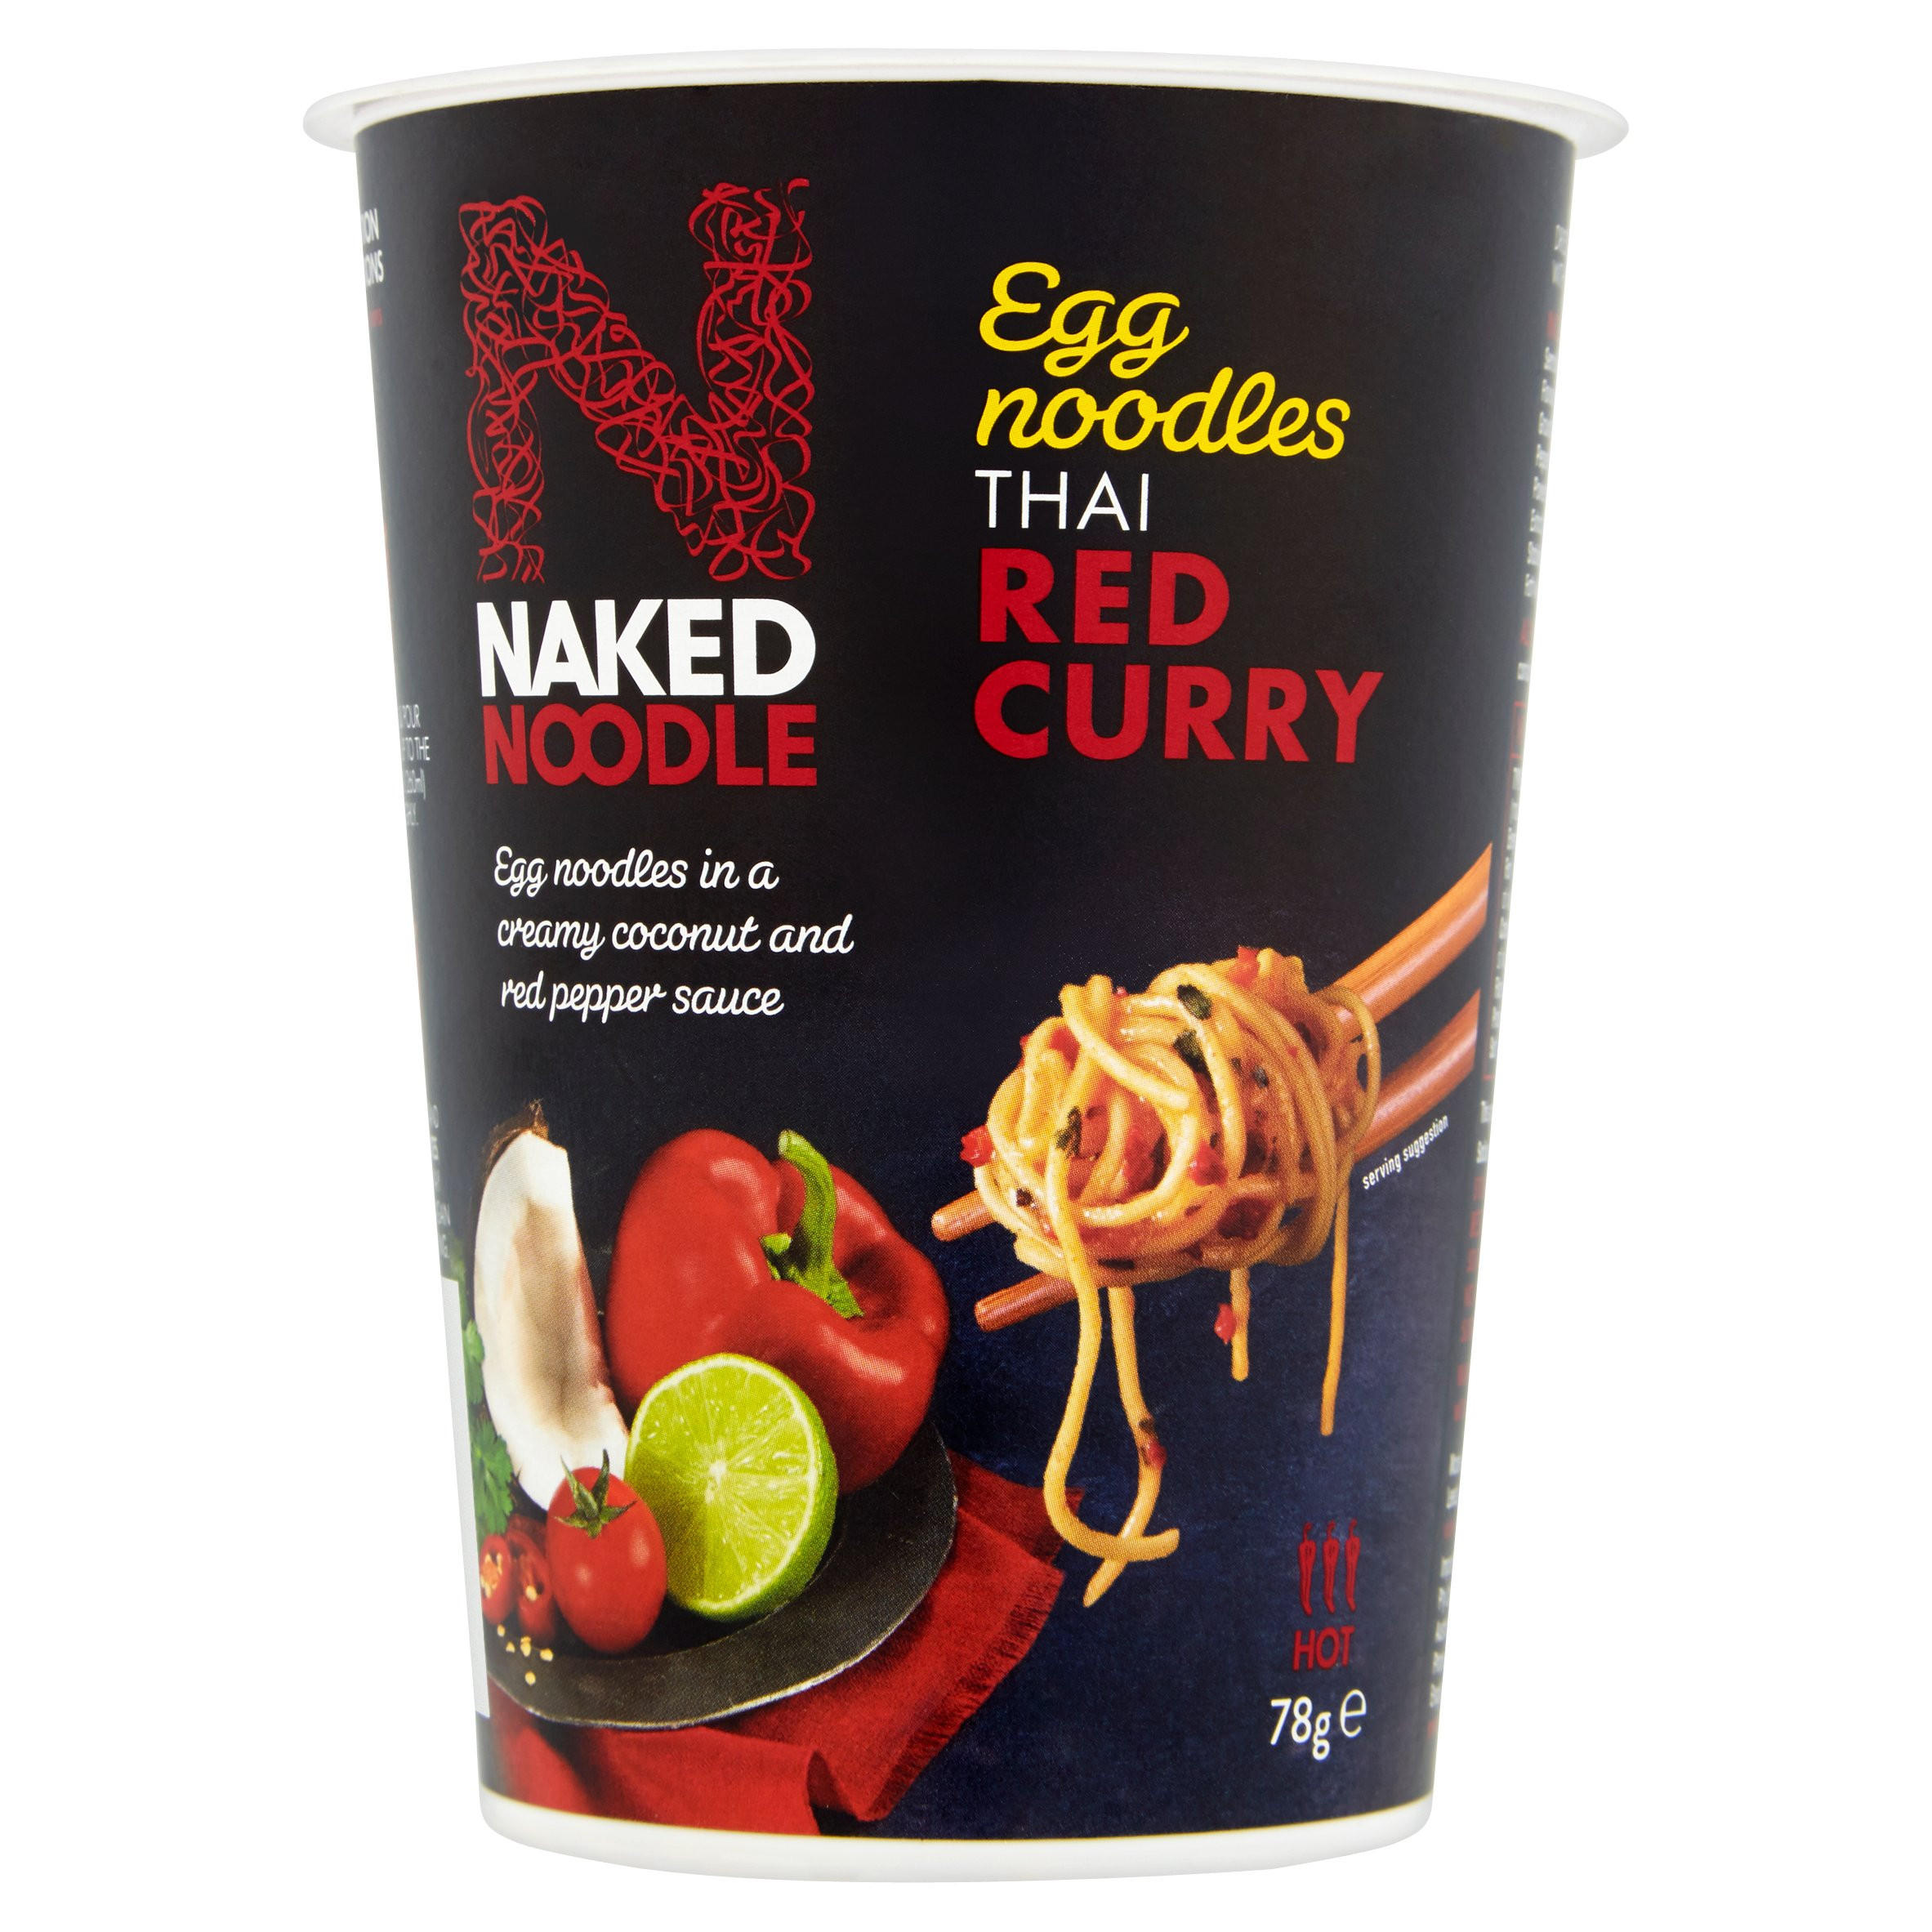 Naked Noodle Egg Noodles Thai Red Curry 78g | Noodles | Iceland Foods